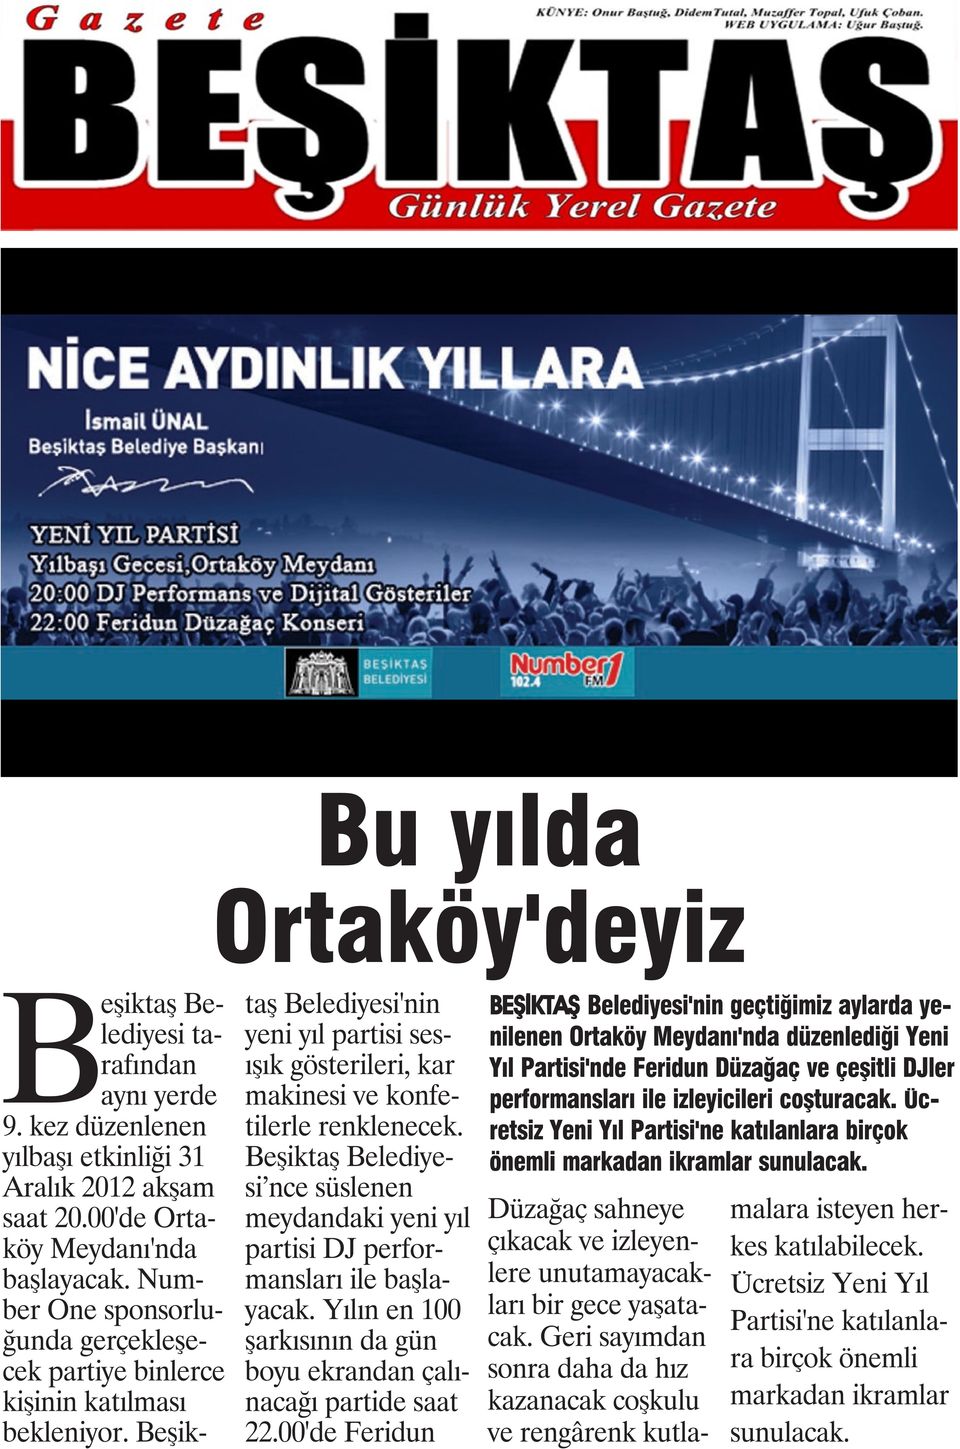 Beşiktaş Belediyesi nce süslenen meydandaki yeni yıl partisi DJ performansları ile başlayacak. Yılın en 100 şarkısının da gün boyu ekrandan çalınacağı partide saat 22.